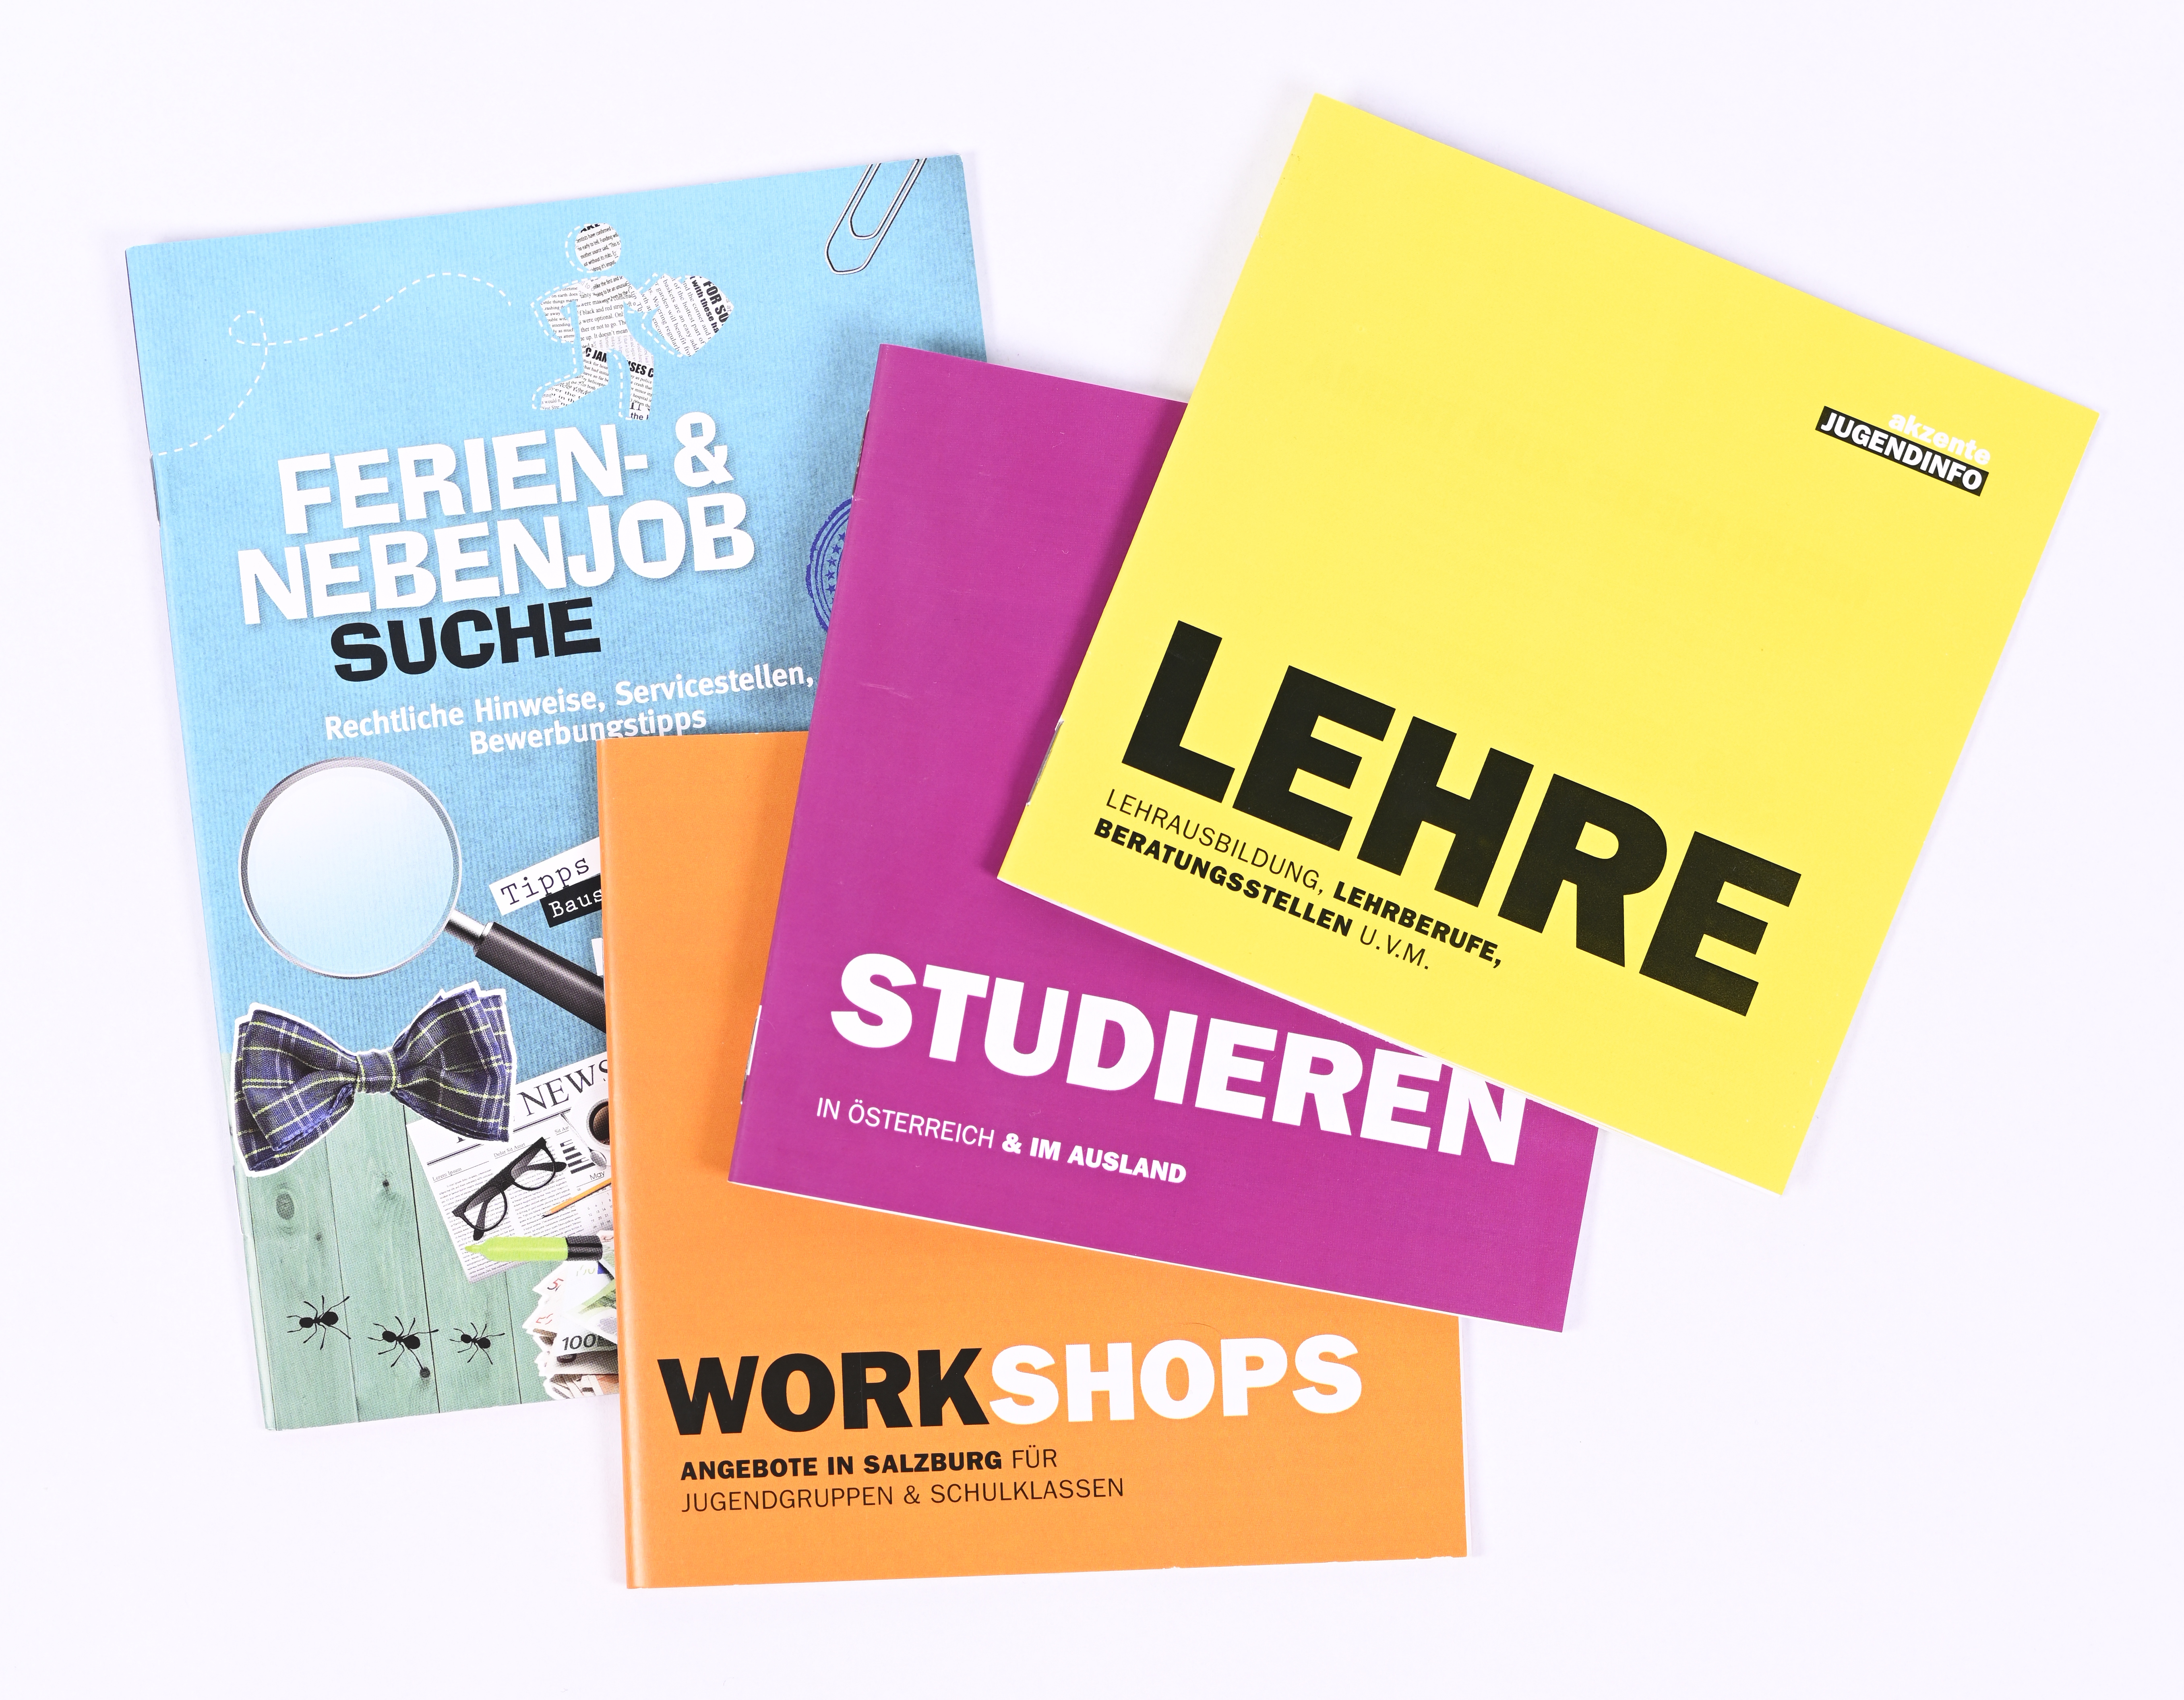 Coverbilder Broschüren Lehre, Studieren, Workshops, Ferien- und Nebejobsuche akzente Jugendinfo